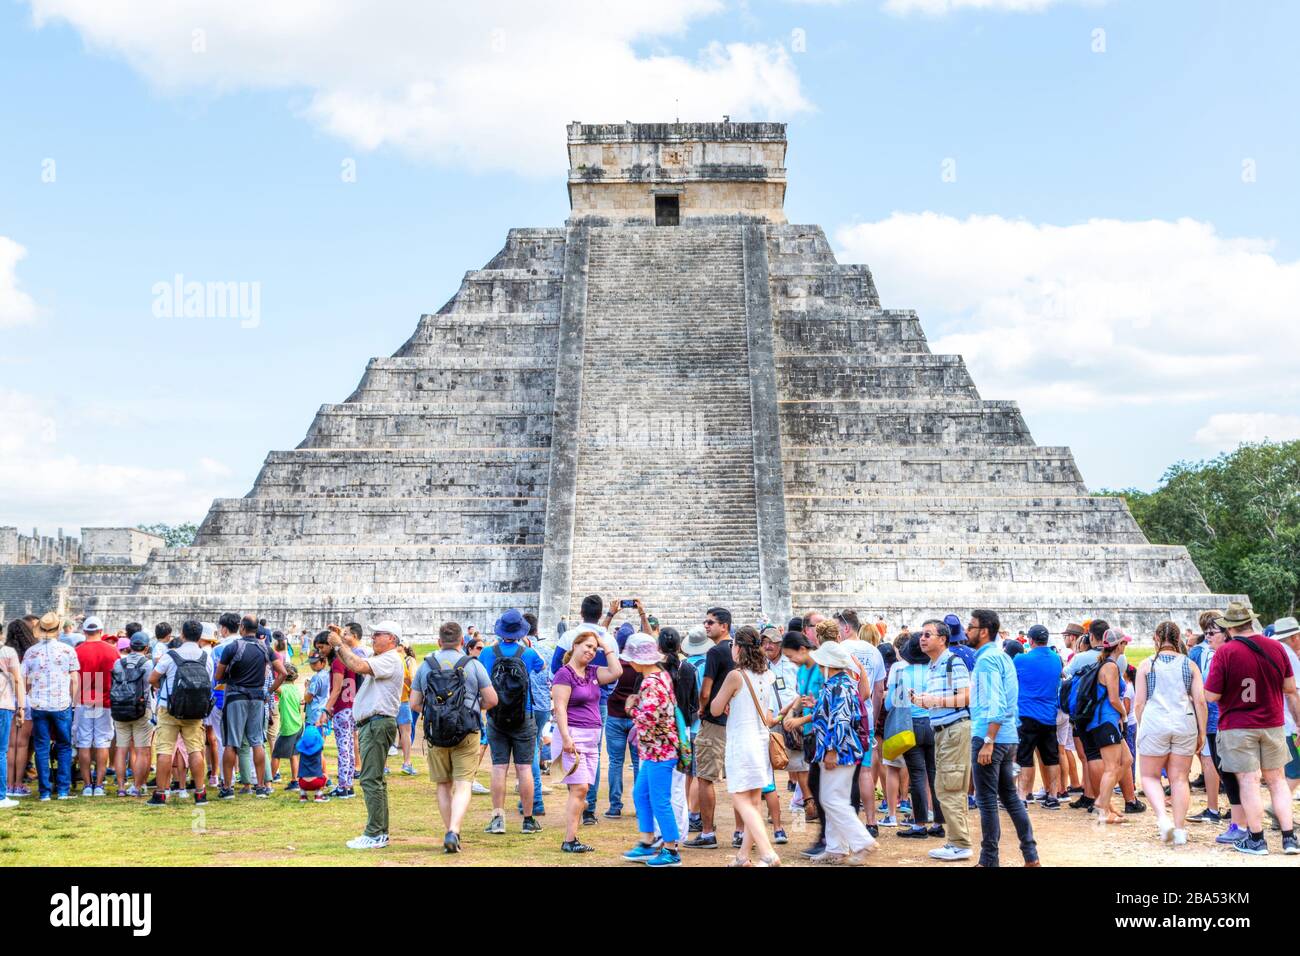 Chichen Itza, Mexiko - 23. Dezember 2019: Touristen besuchen die berühmte Kukulcan Pyramide in Chichen Itza auf der Halbinsel Yucatan in Mexiko. EINE UNESCO-WELT H Stockfoto